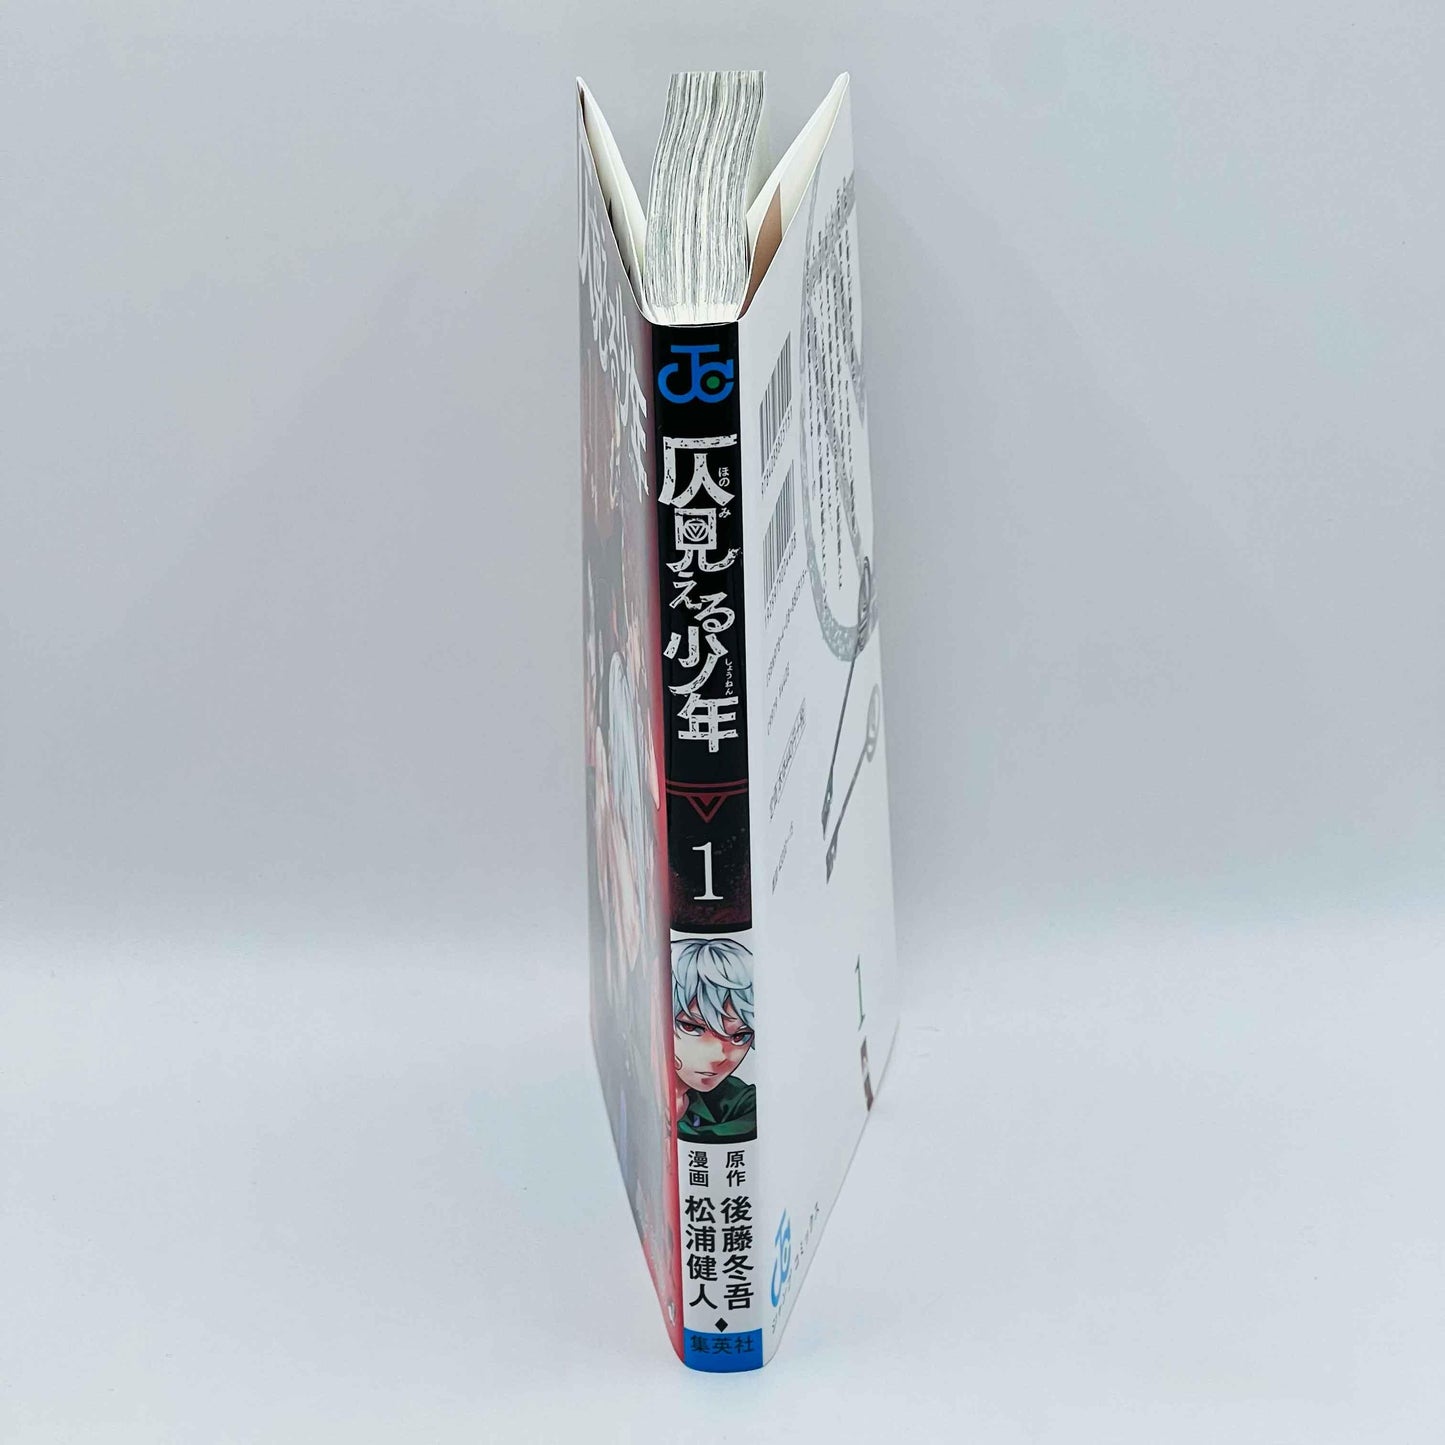 Hono Mieru Shonen - Volume 01 - 1stPrint.net - 1st First Print Edition Manga Store - M-HONOSHONEN-01-001